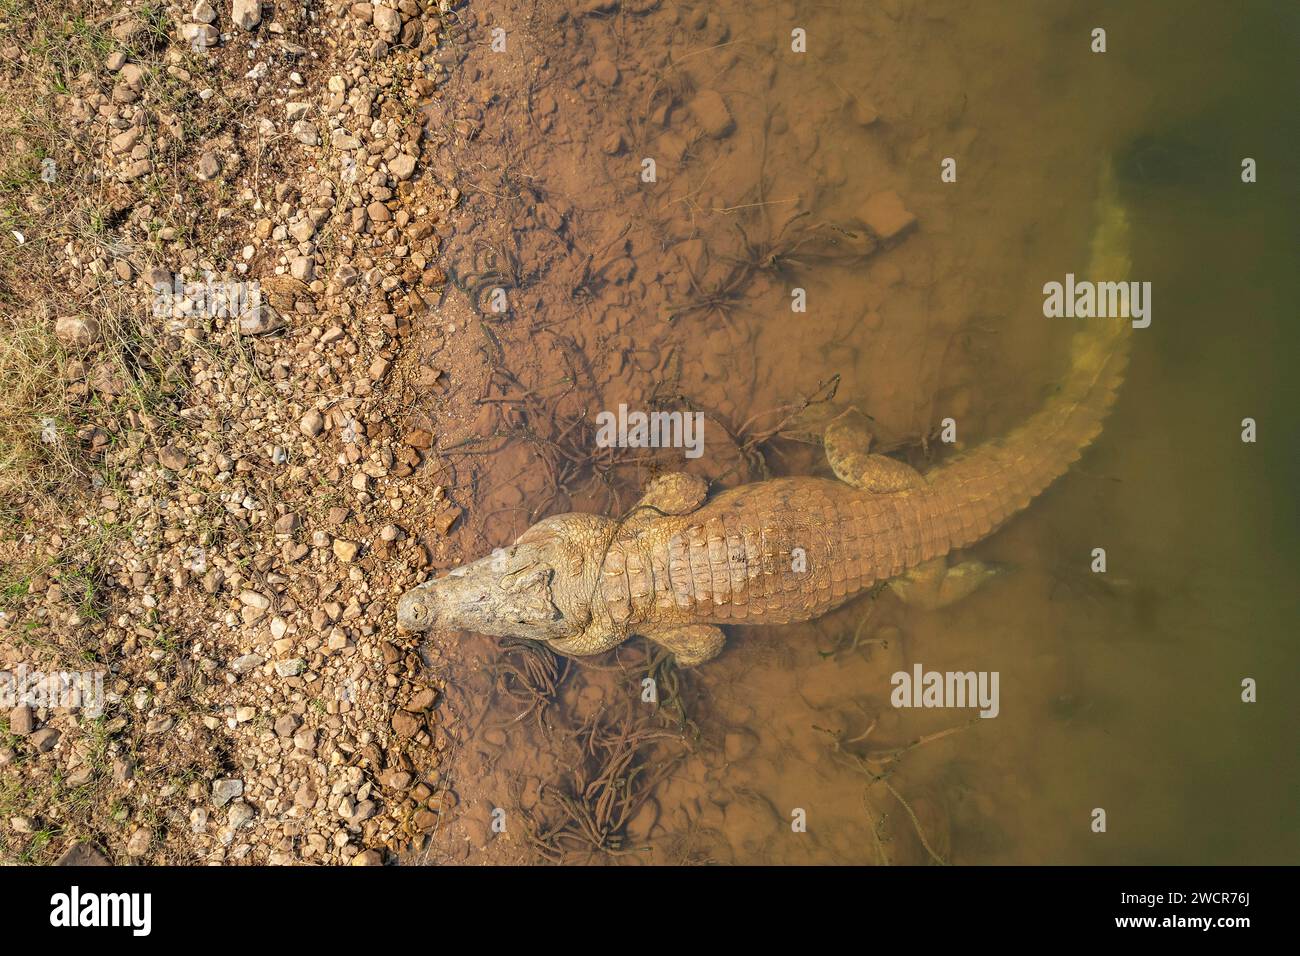 Ein großes Nil-Krokodil, Crocodylus niloticus, wird von einer Drohne aus dem Kariba-See in Simbabwe gesehen. Stockfoto